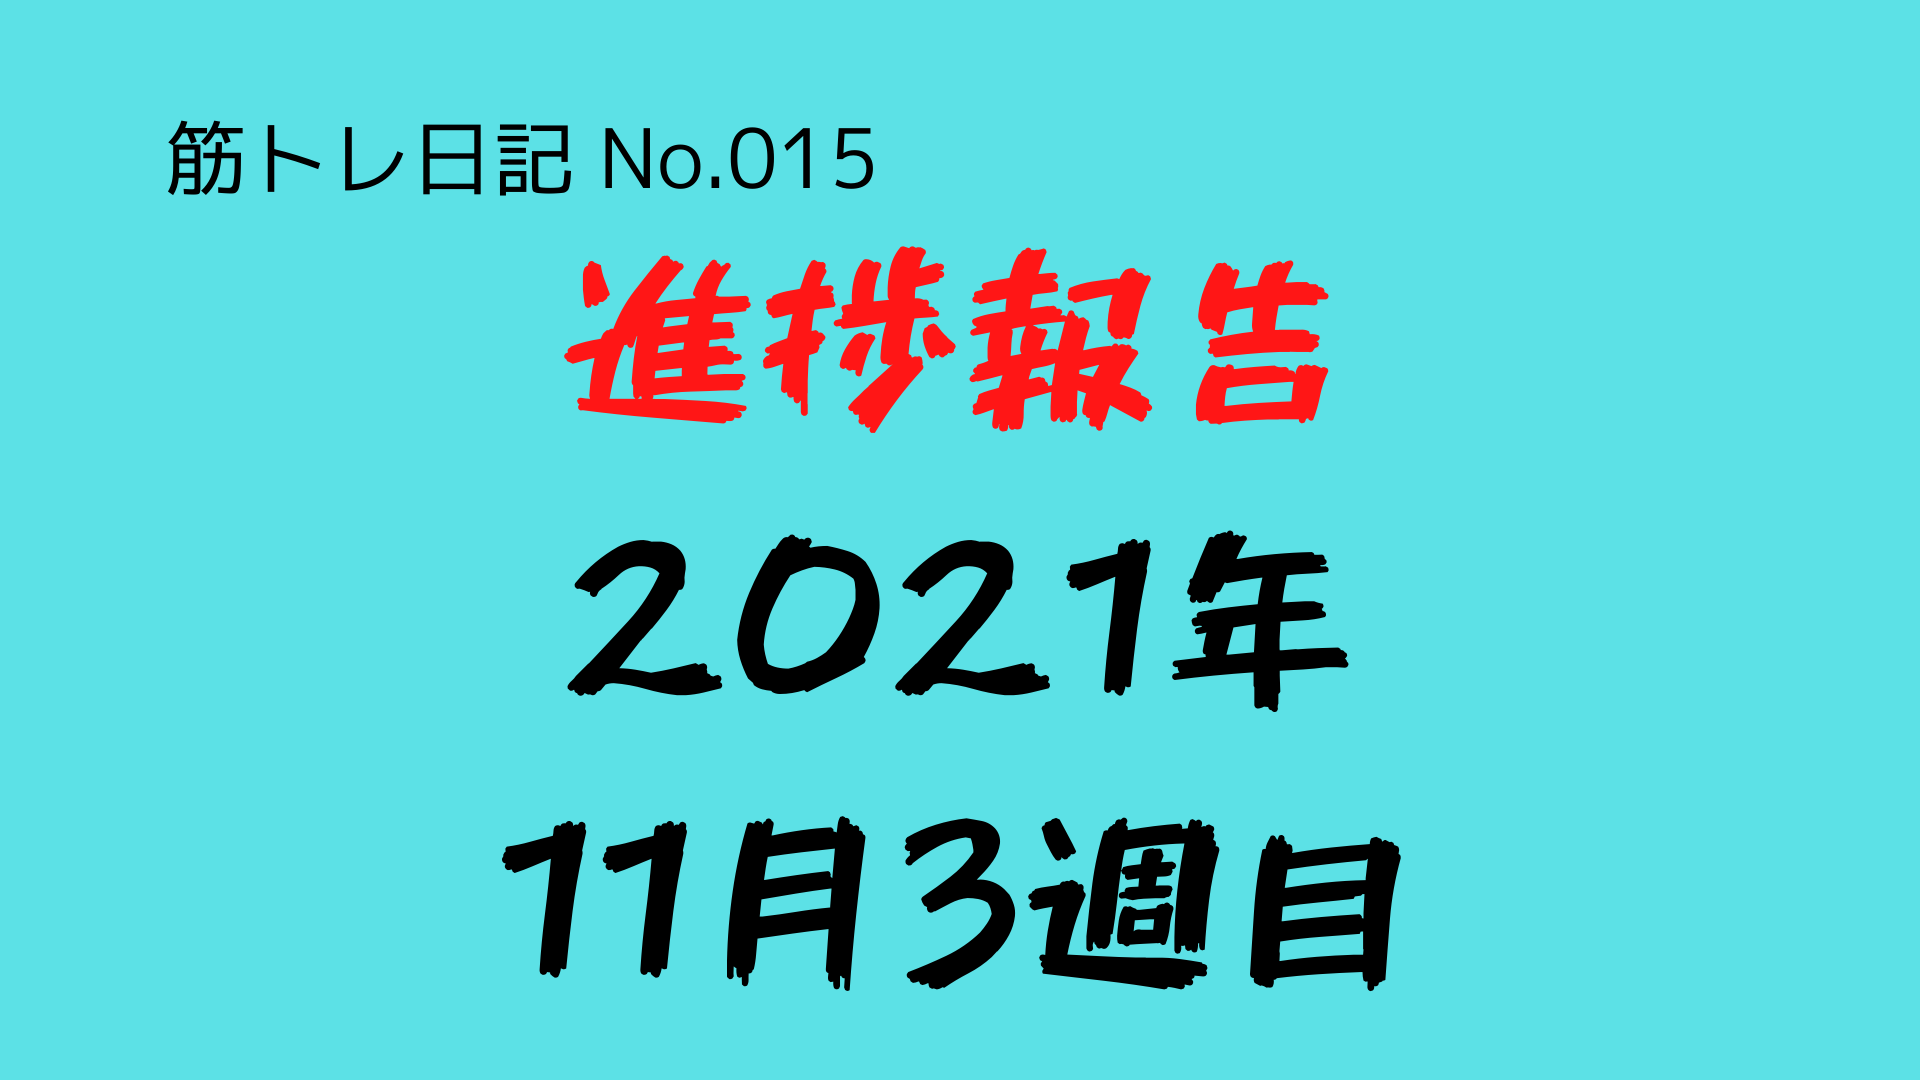 （筋トレ日記-No.015）進捗報告（2021年11月3週目：14日〜20日）：ハンギングワイパーの最高回数が18回へ更新される！